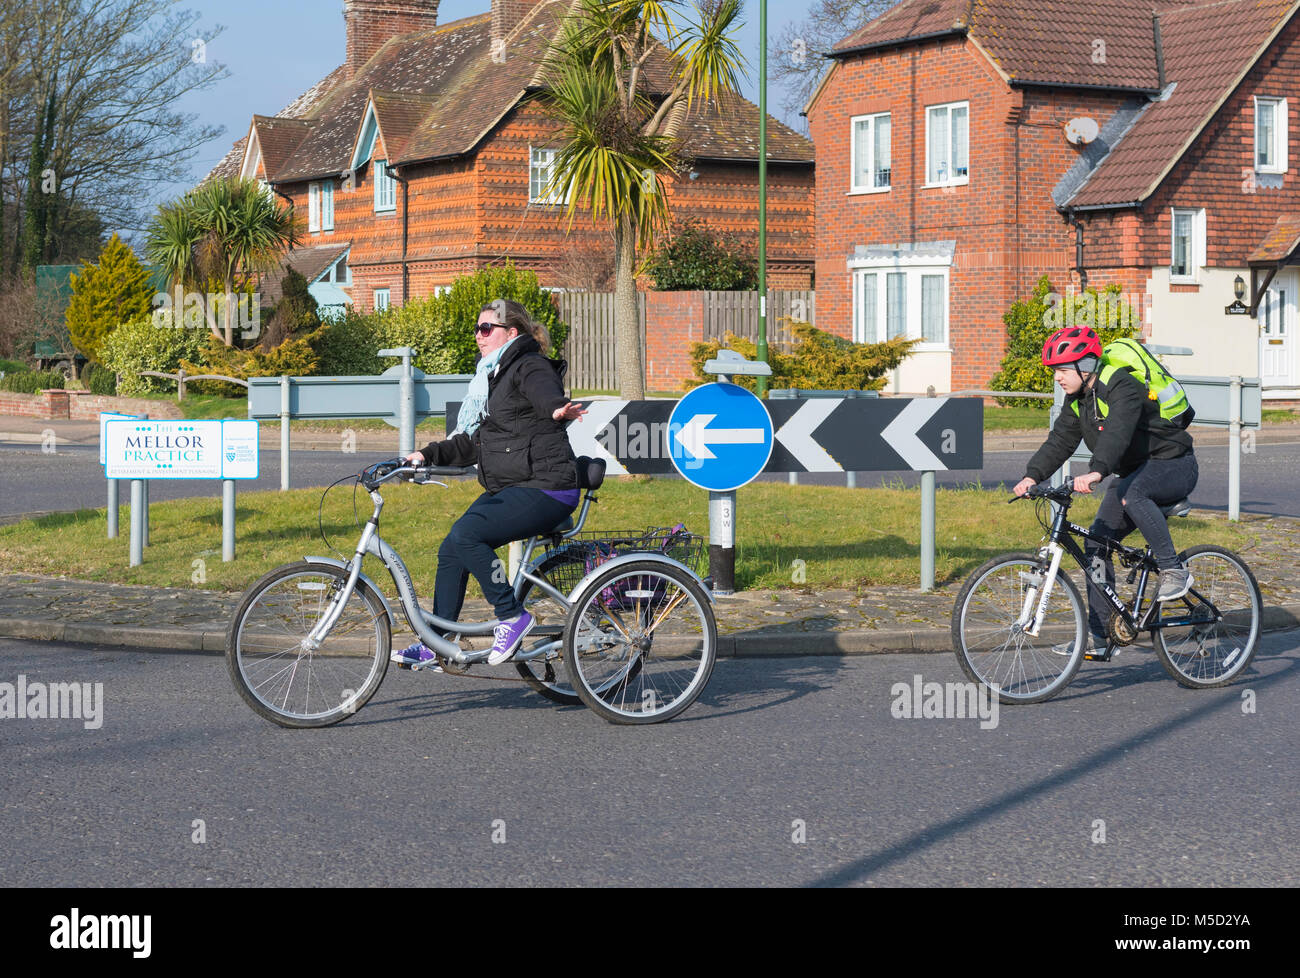 Vélo femme sur un tricycle, un vélo pédale avec 3 roues, autour d'un petit  rond-point en Angleterre, Royaume-Uni Photo Stock - Alamy